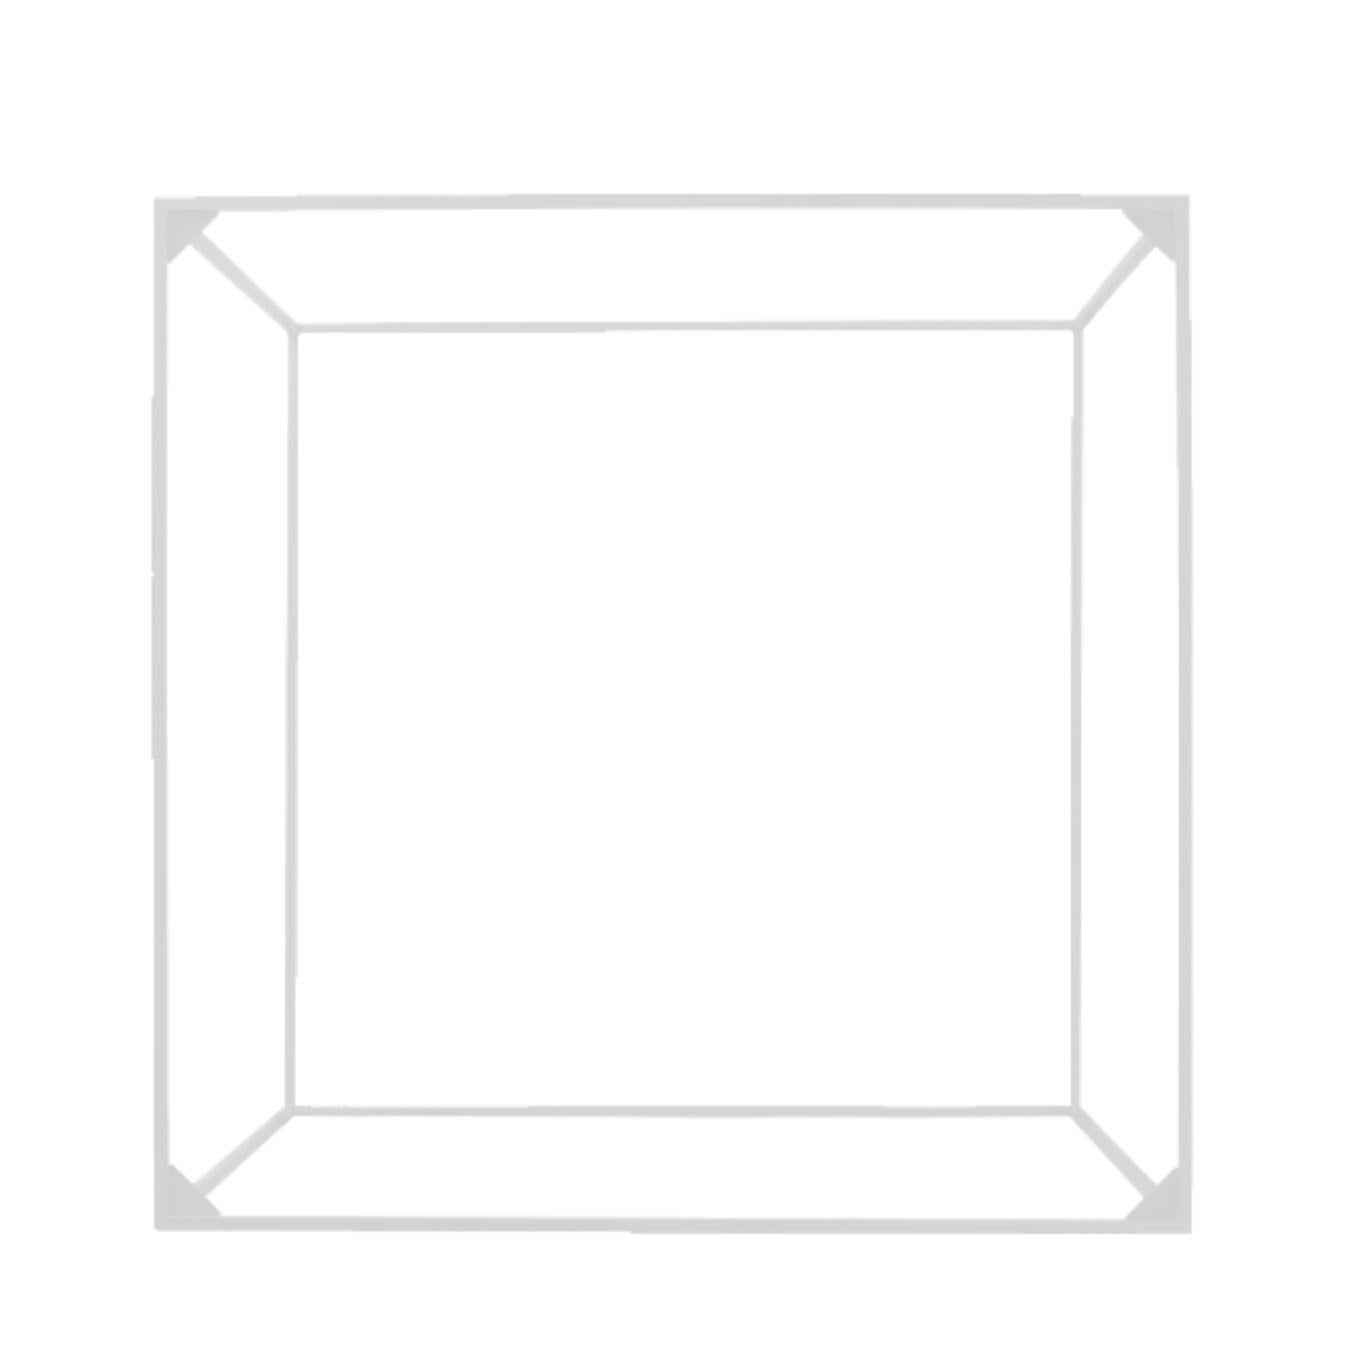 49 Cadre blanc pour table jumelle de Lassen.
Dimensions : D 49 x L 49 x H 35 cm.
Matériaux : Métal.

By Lassen est une marque de design danoise axée sur les modèles emblématiques créés par Mogens et Flemming Lassen. Elle a été fondée par les parents